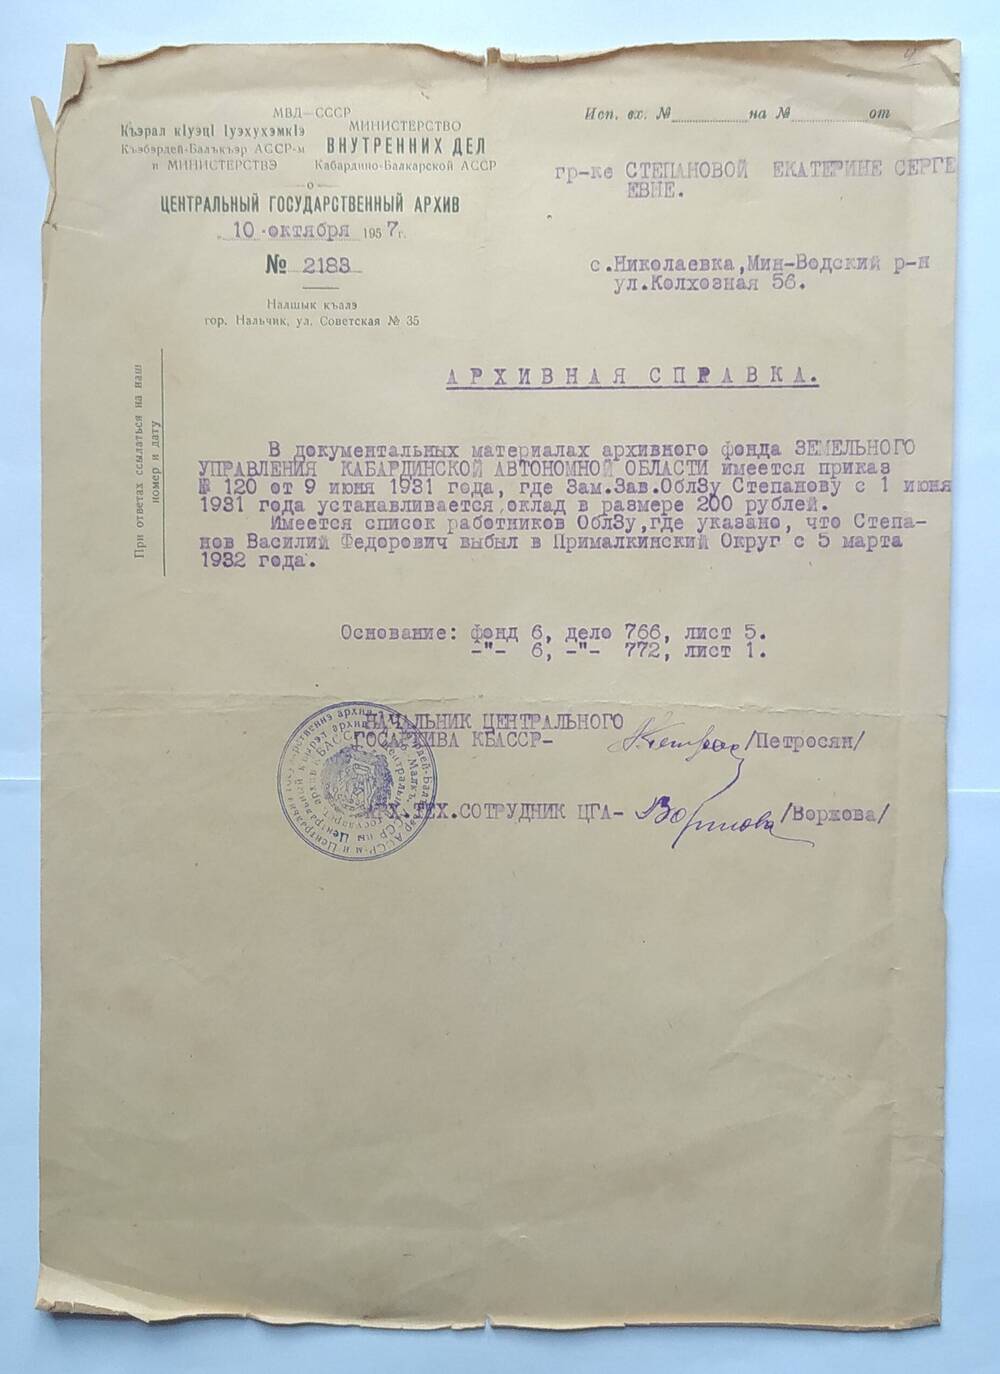 Архивная справка из Государственного архива на имя Степановой Е.С.